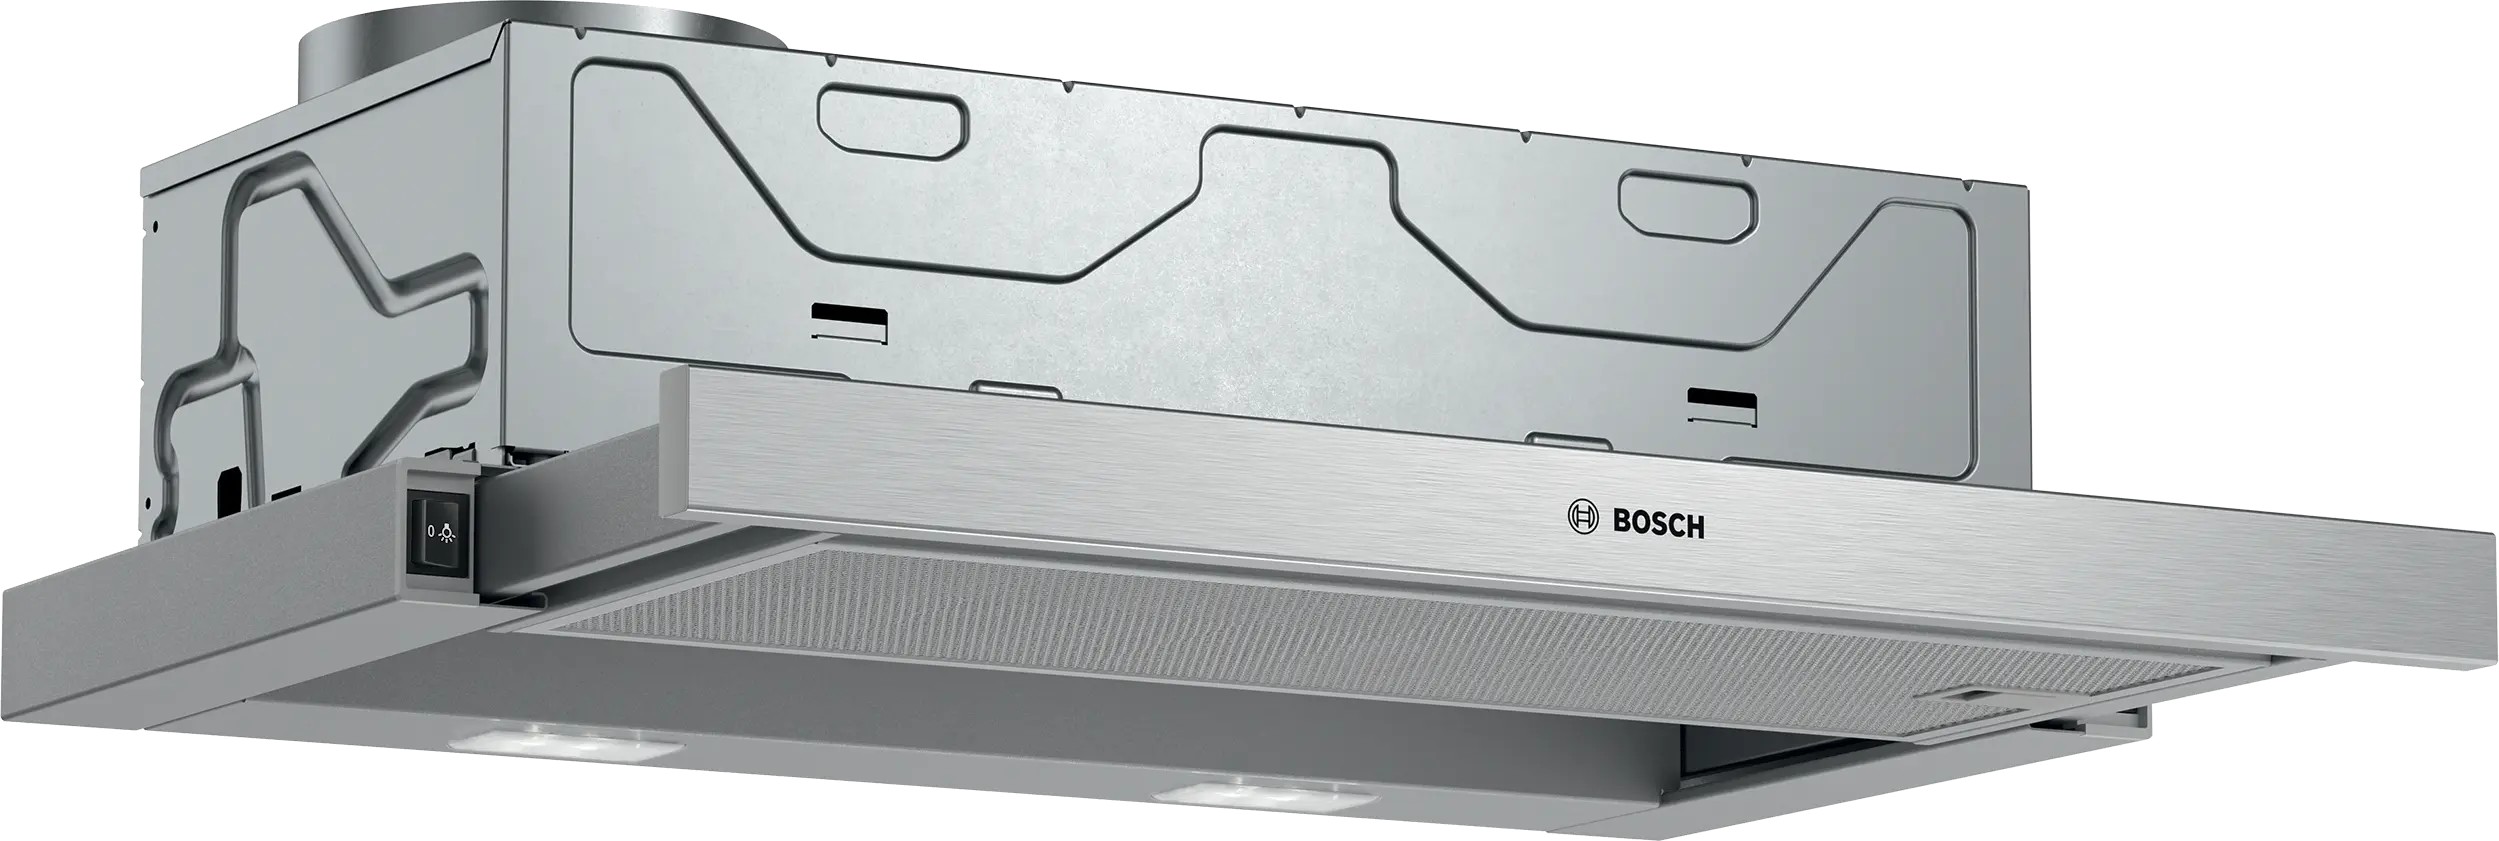 Отзывы вытяжка bosch встраиваемая Bosch DFM064W54 в Украине